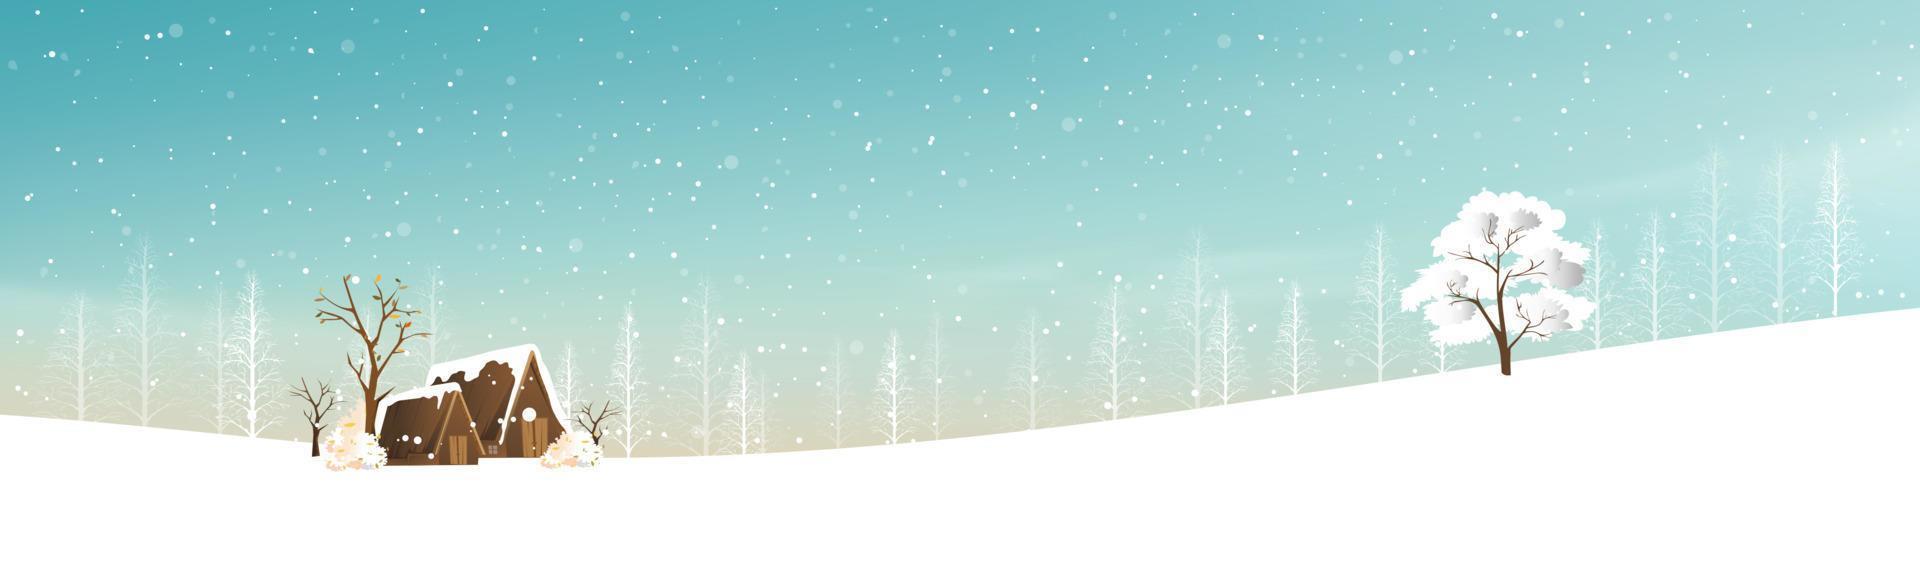 paisaje invernal con cubierta nevando, ilustración vectorial casa de campo del país de las maravillas en pueblo con pino forestal y ramas sin hojas.banner horizontal para vacaciones de navidad o año nuevo 2022 vector